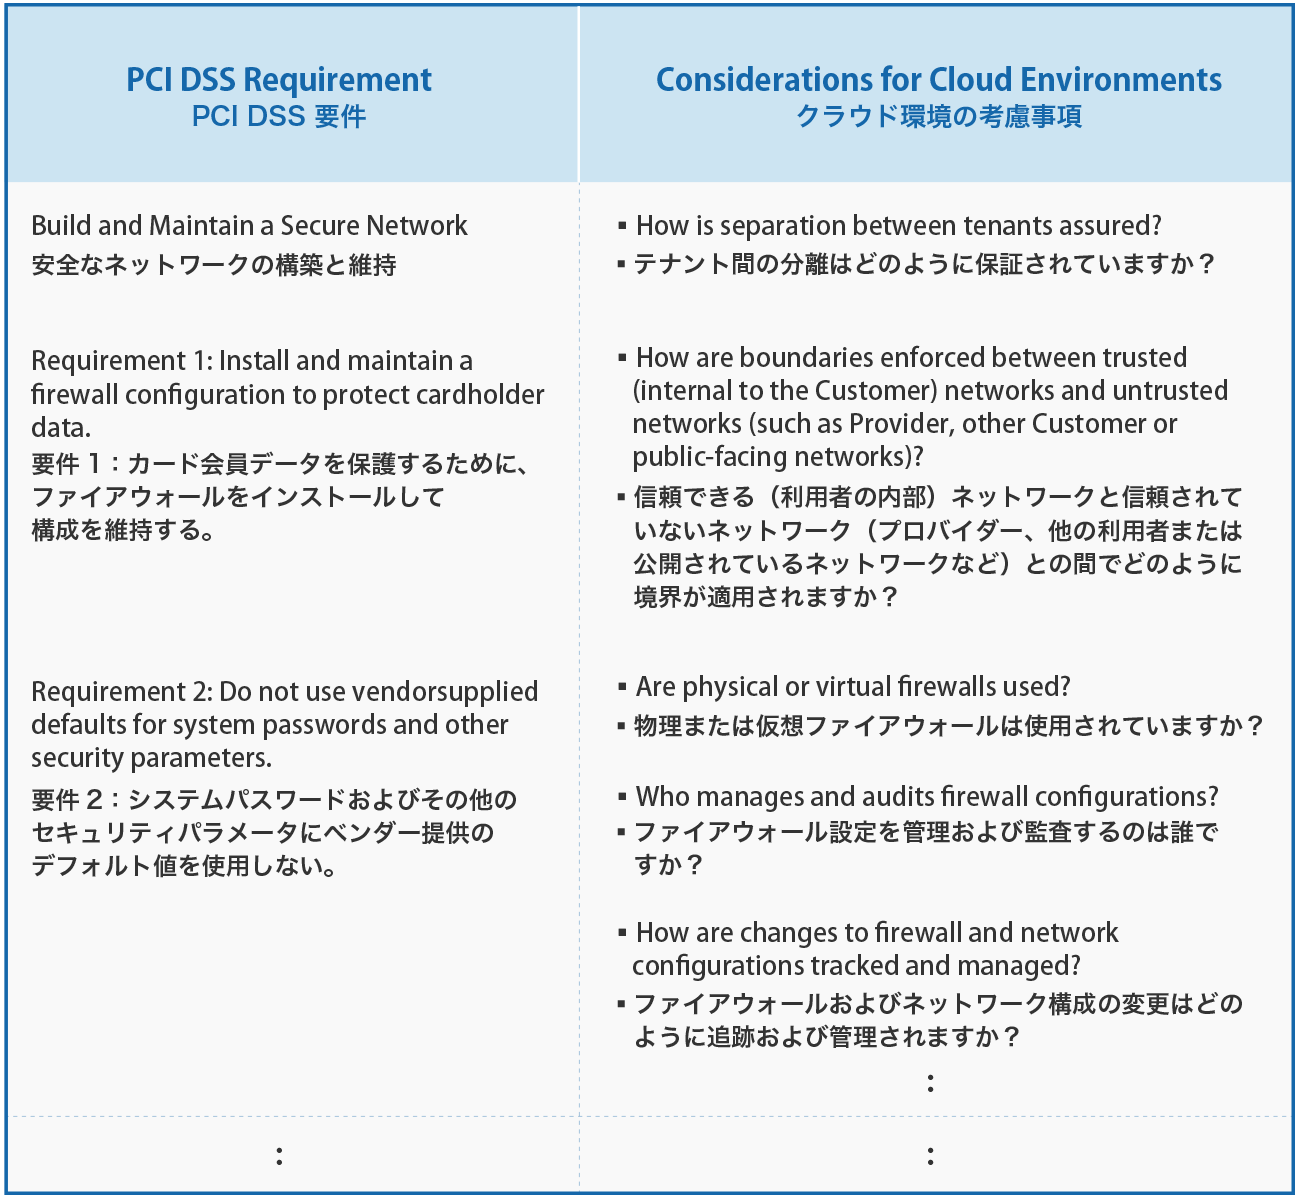 表1「PCI SSC Cloud Computing Guidelines」Appendix D: PCI DSS Implementation Considerations より意訳、抜粋